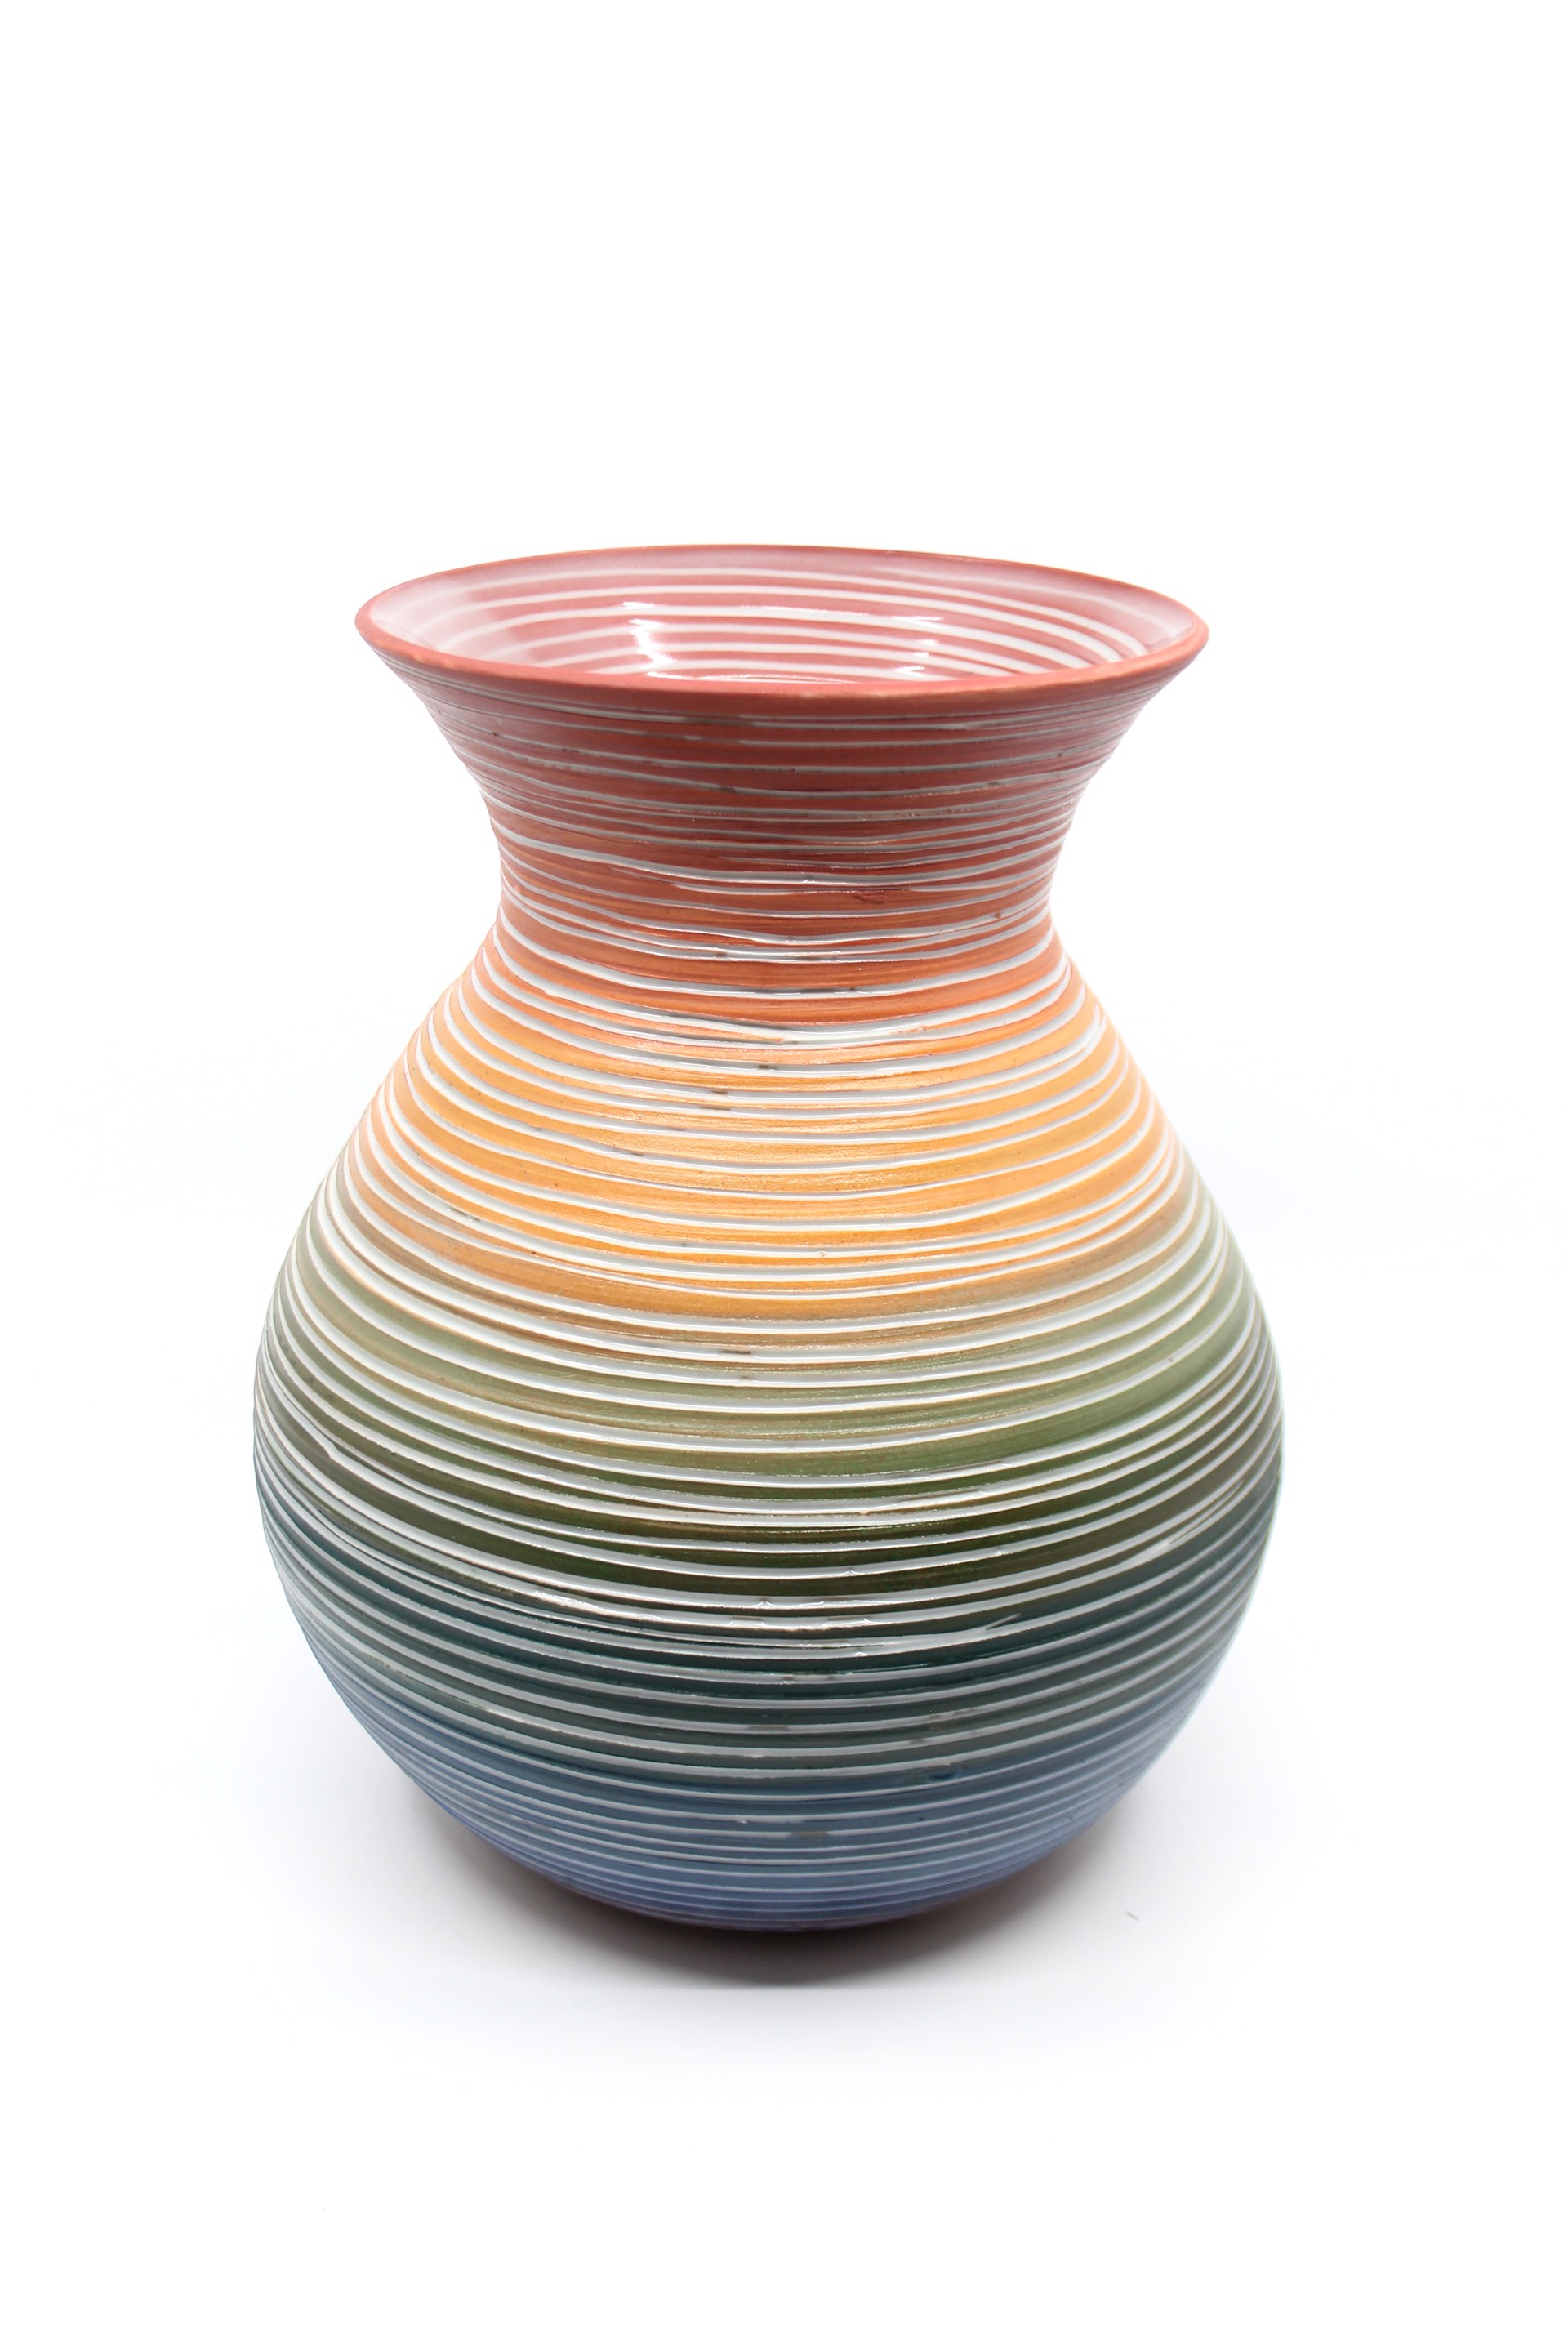 ROYGBIV Vase by Heather Bradley